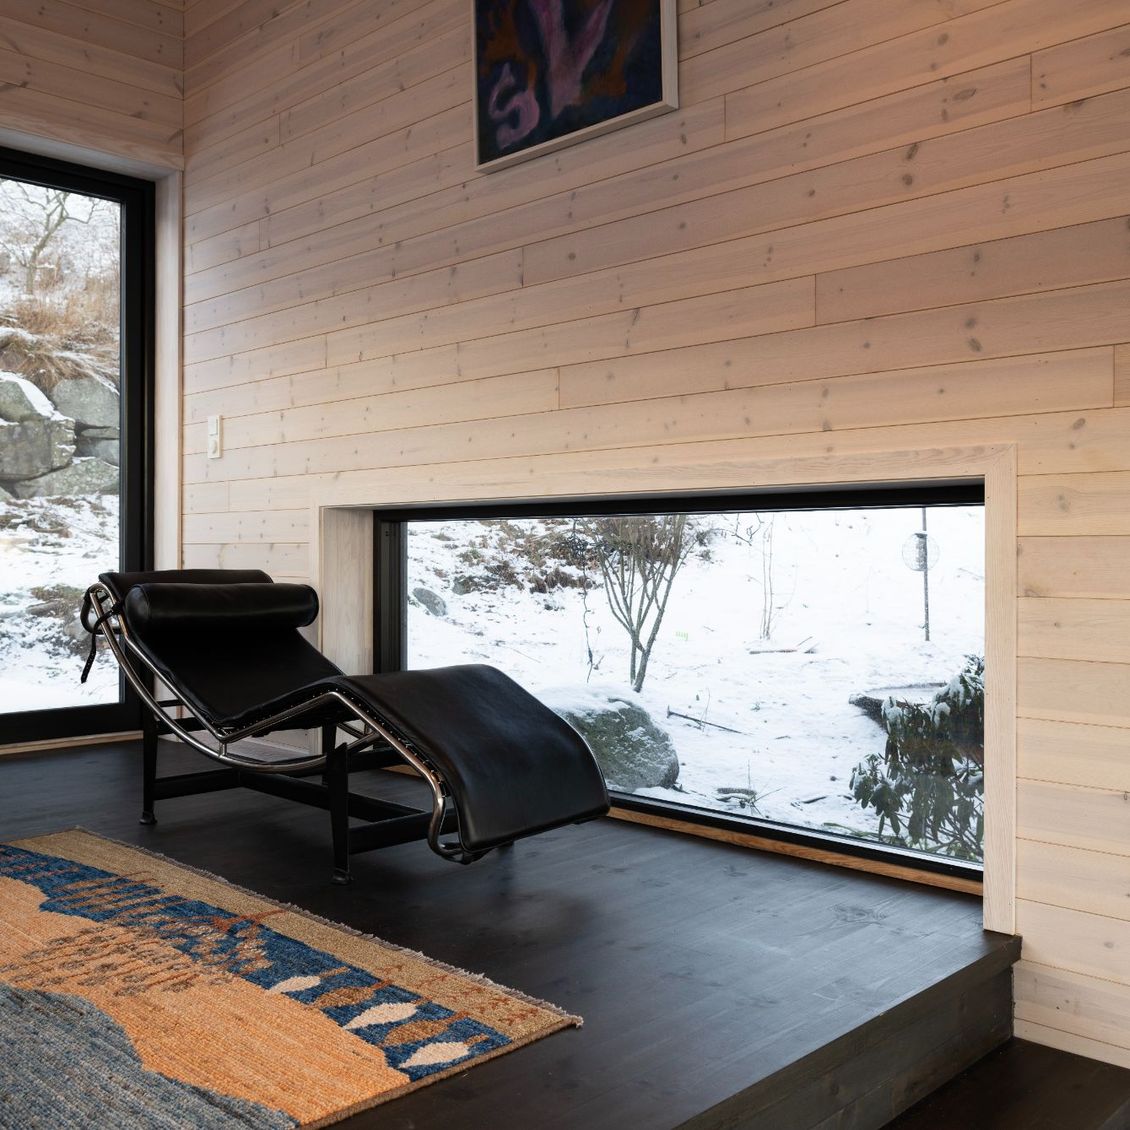 Bilde av stue med 3 vinduer og en daybed/chaiselong foran det ene vinduet som går langs gulvet.